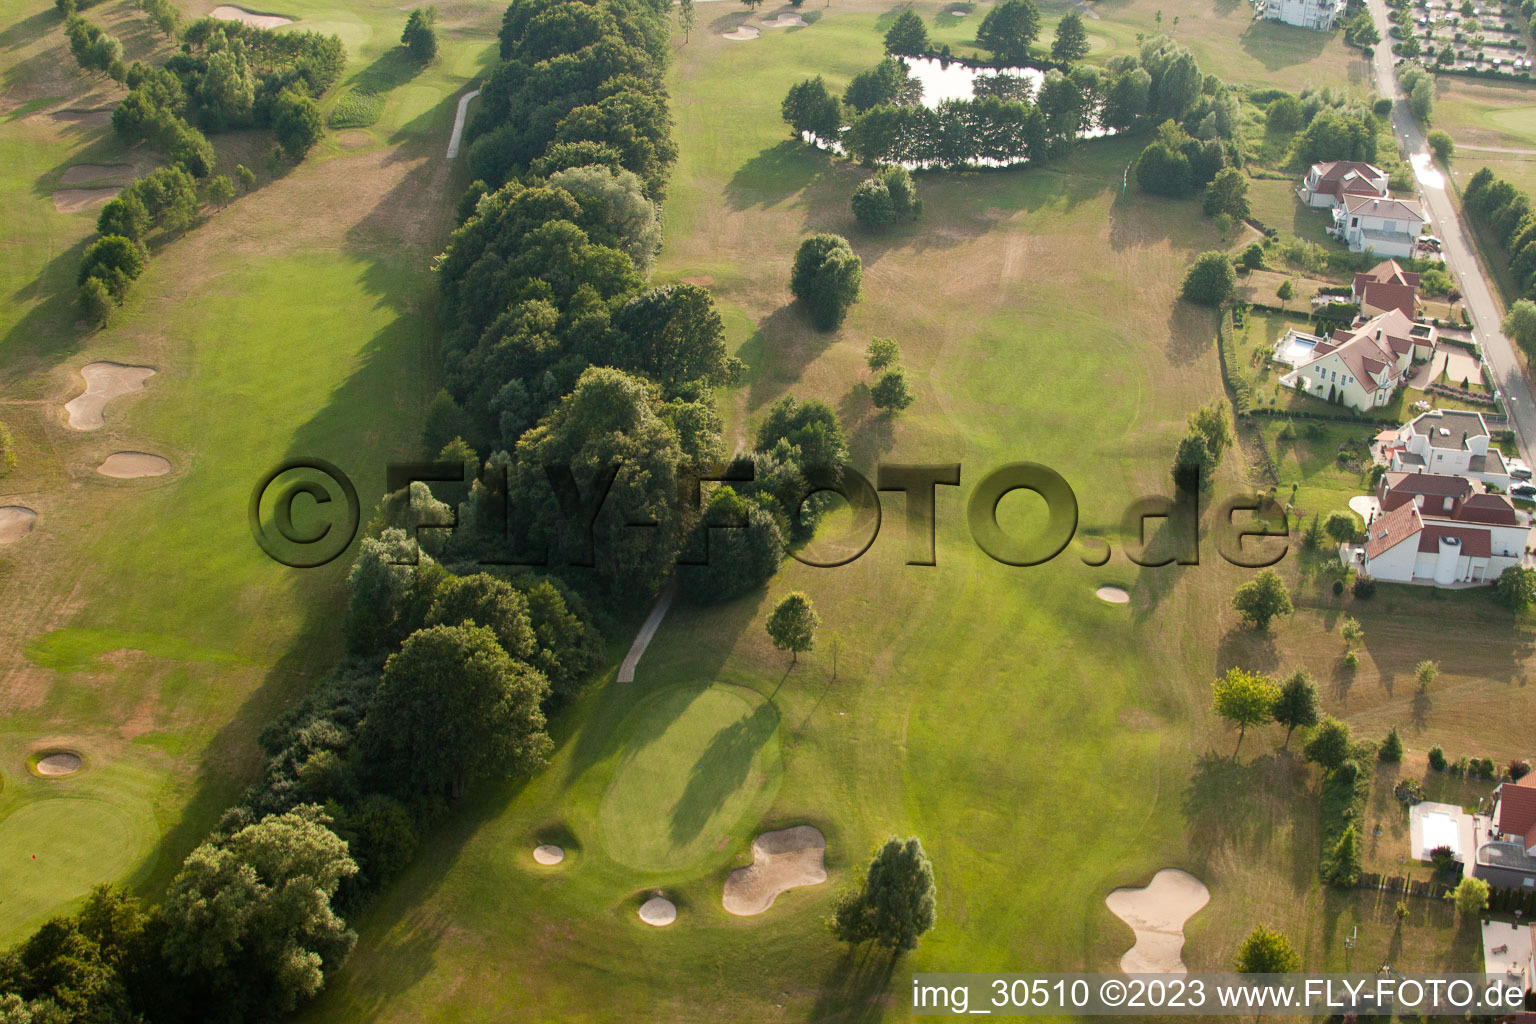 Club de golf Soufflenheim Baden-Baden à Soufflenheim dans le département Bas Rhin, France depuis l'avion